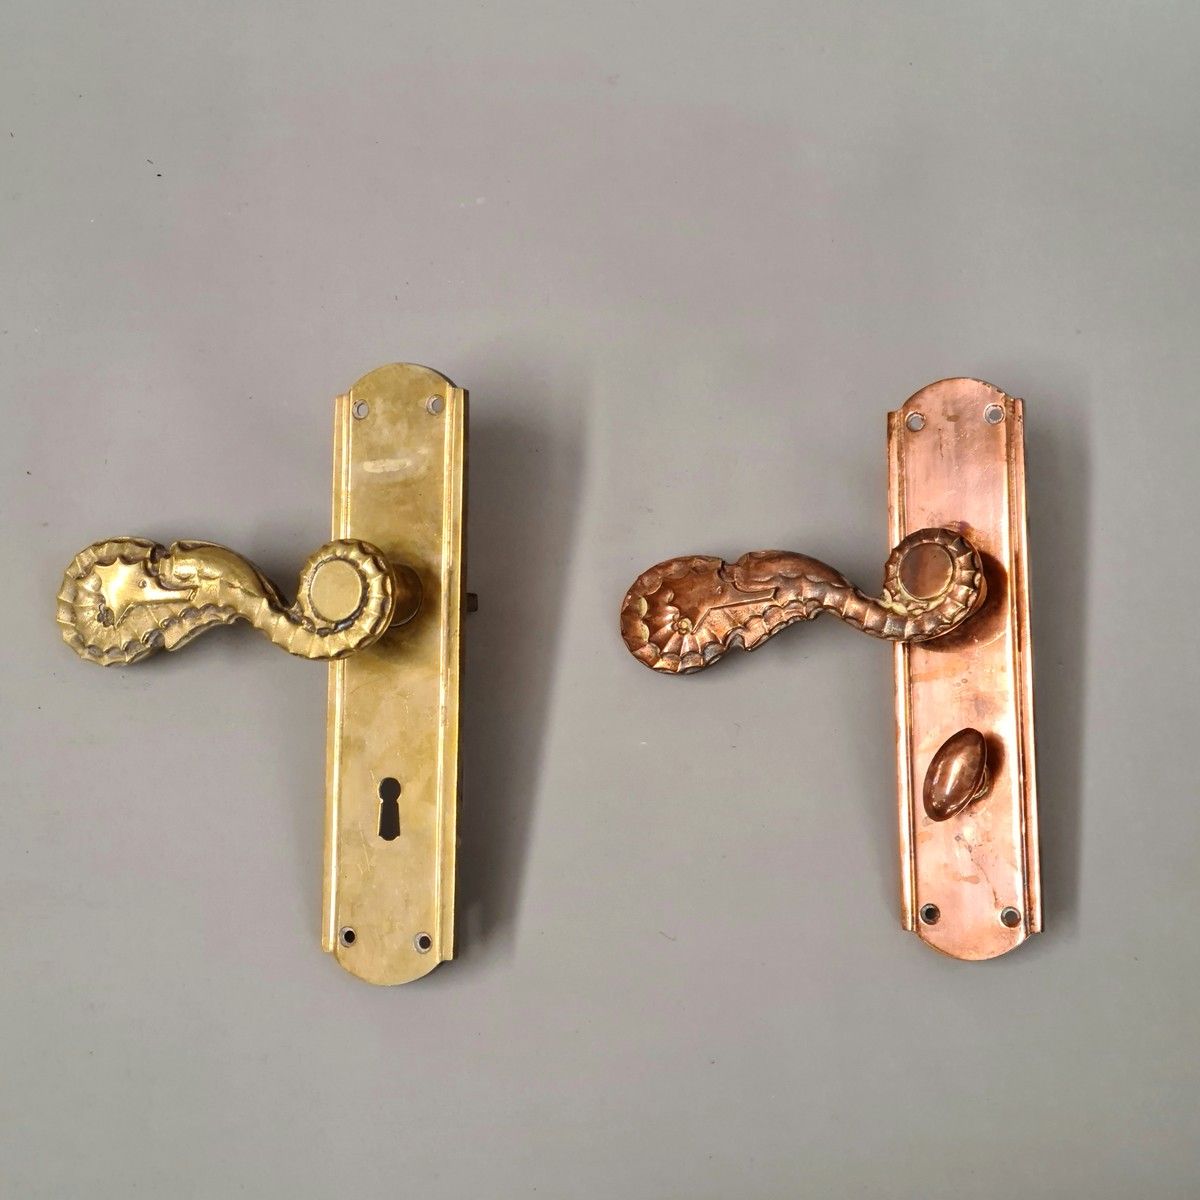 Null 2个门把手及其清洁板 1950年左右，黄铜和铜制，把手为海马形状

L. 22 cm

带有方形